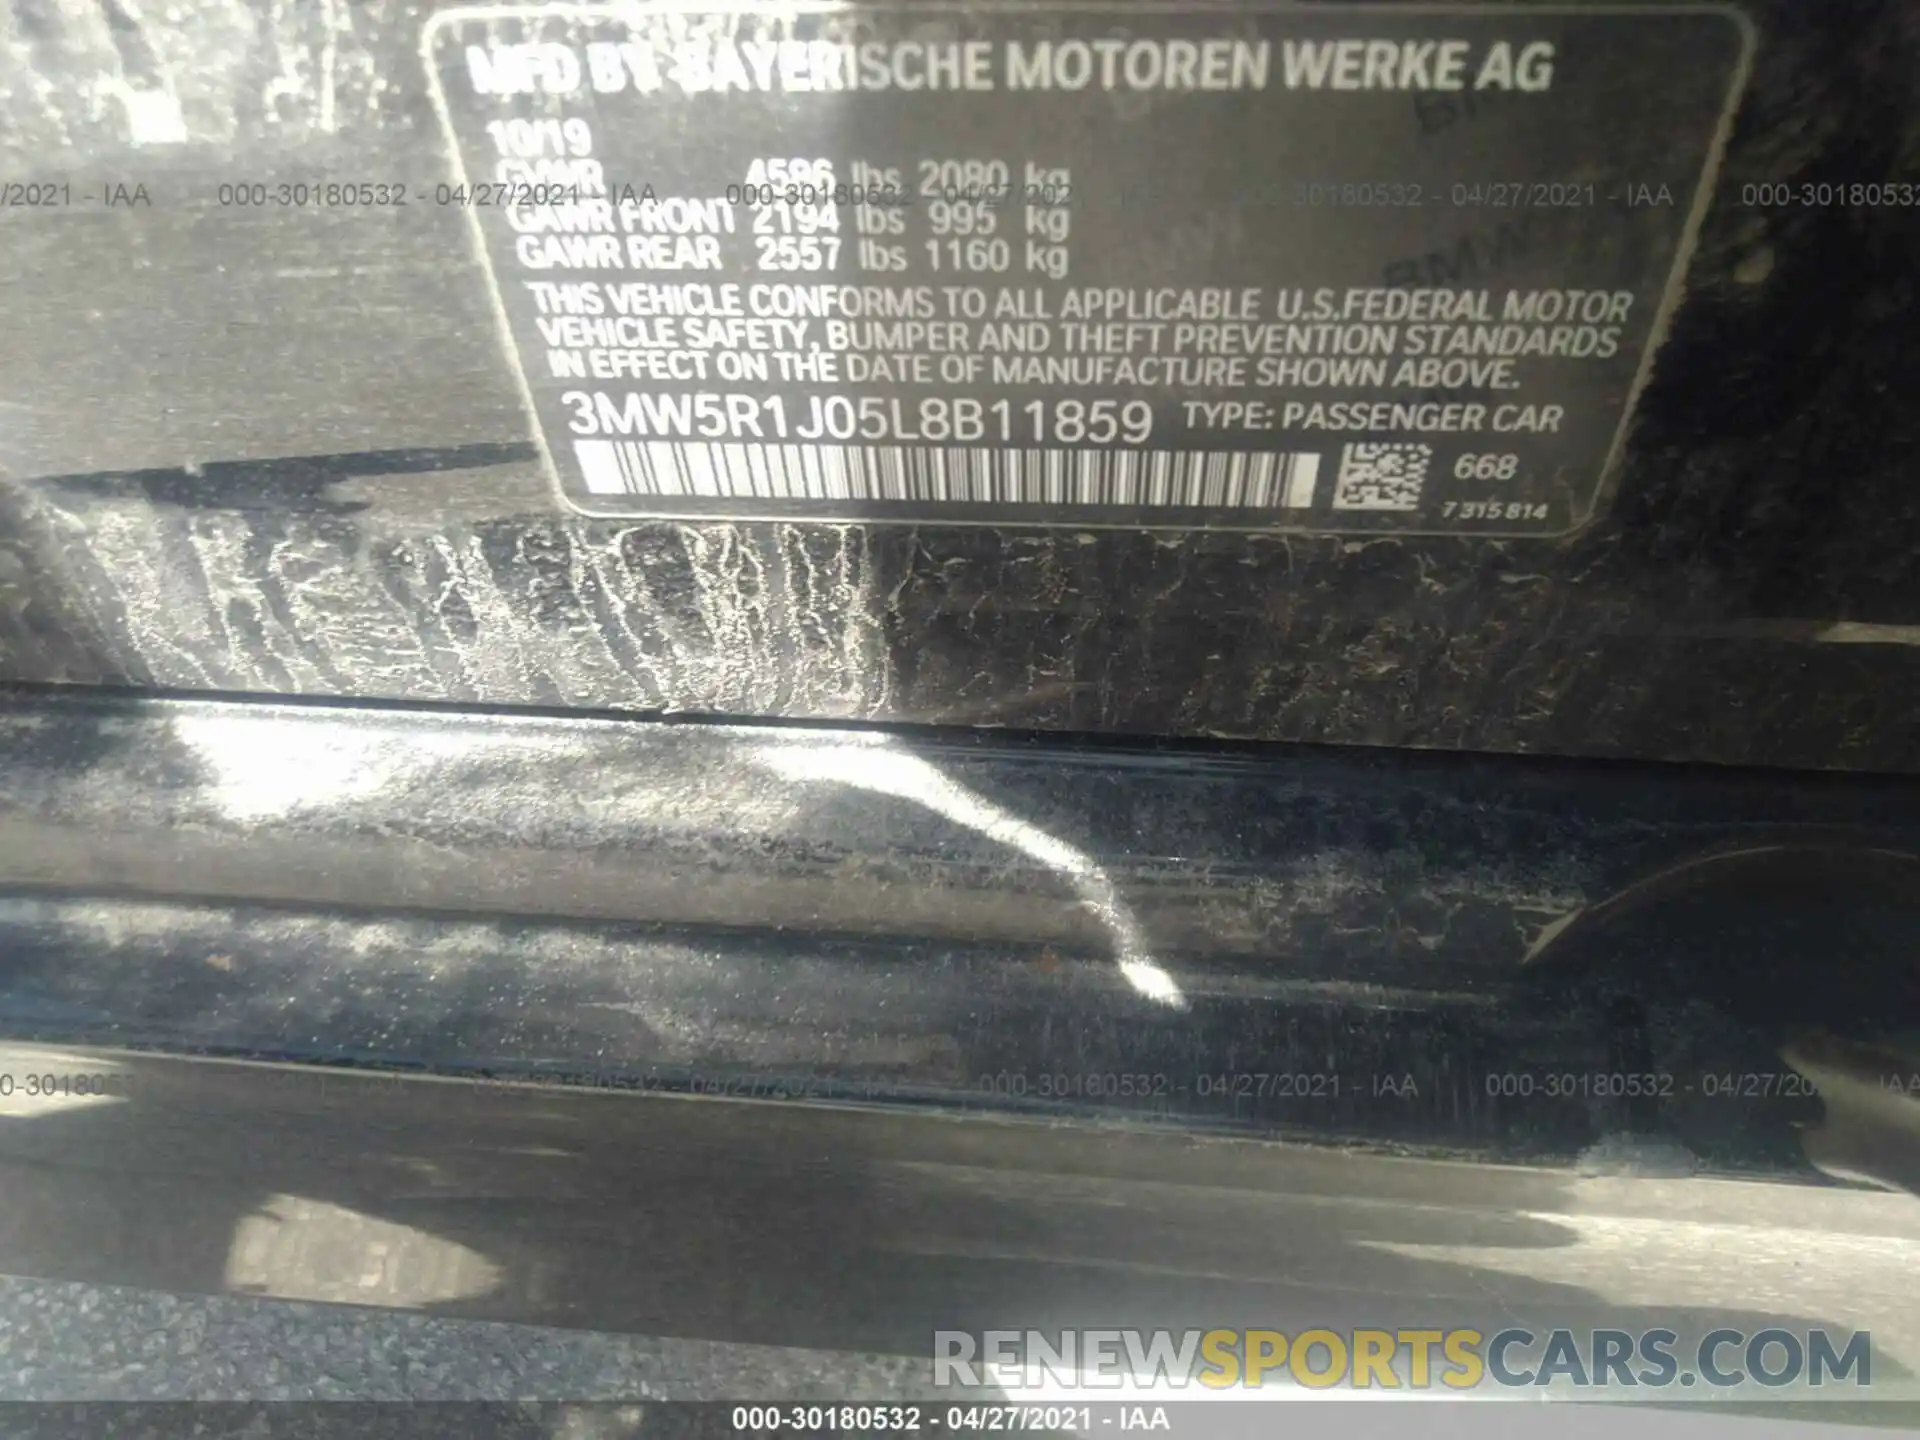 9 Фотография поврежденного автомобиля 3MW5R1J05L8B11859 BMW 3 SERIES 2020